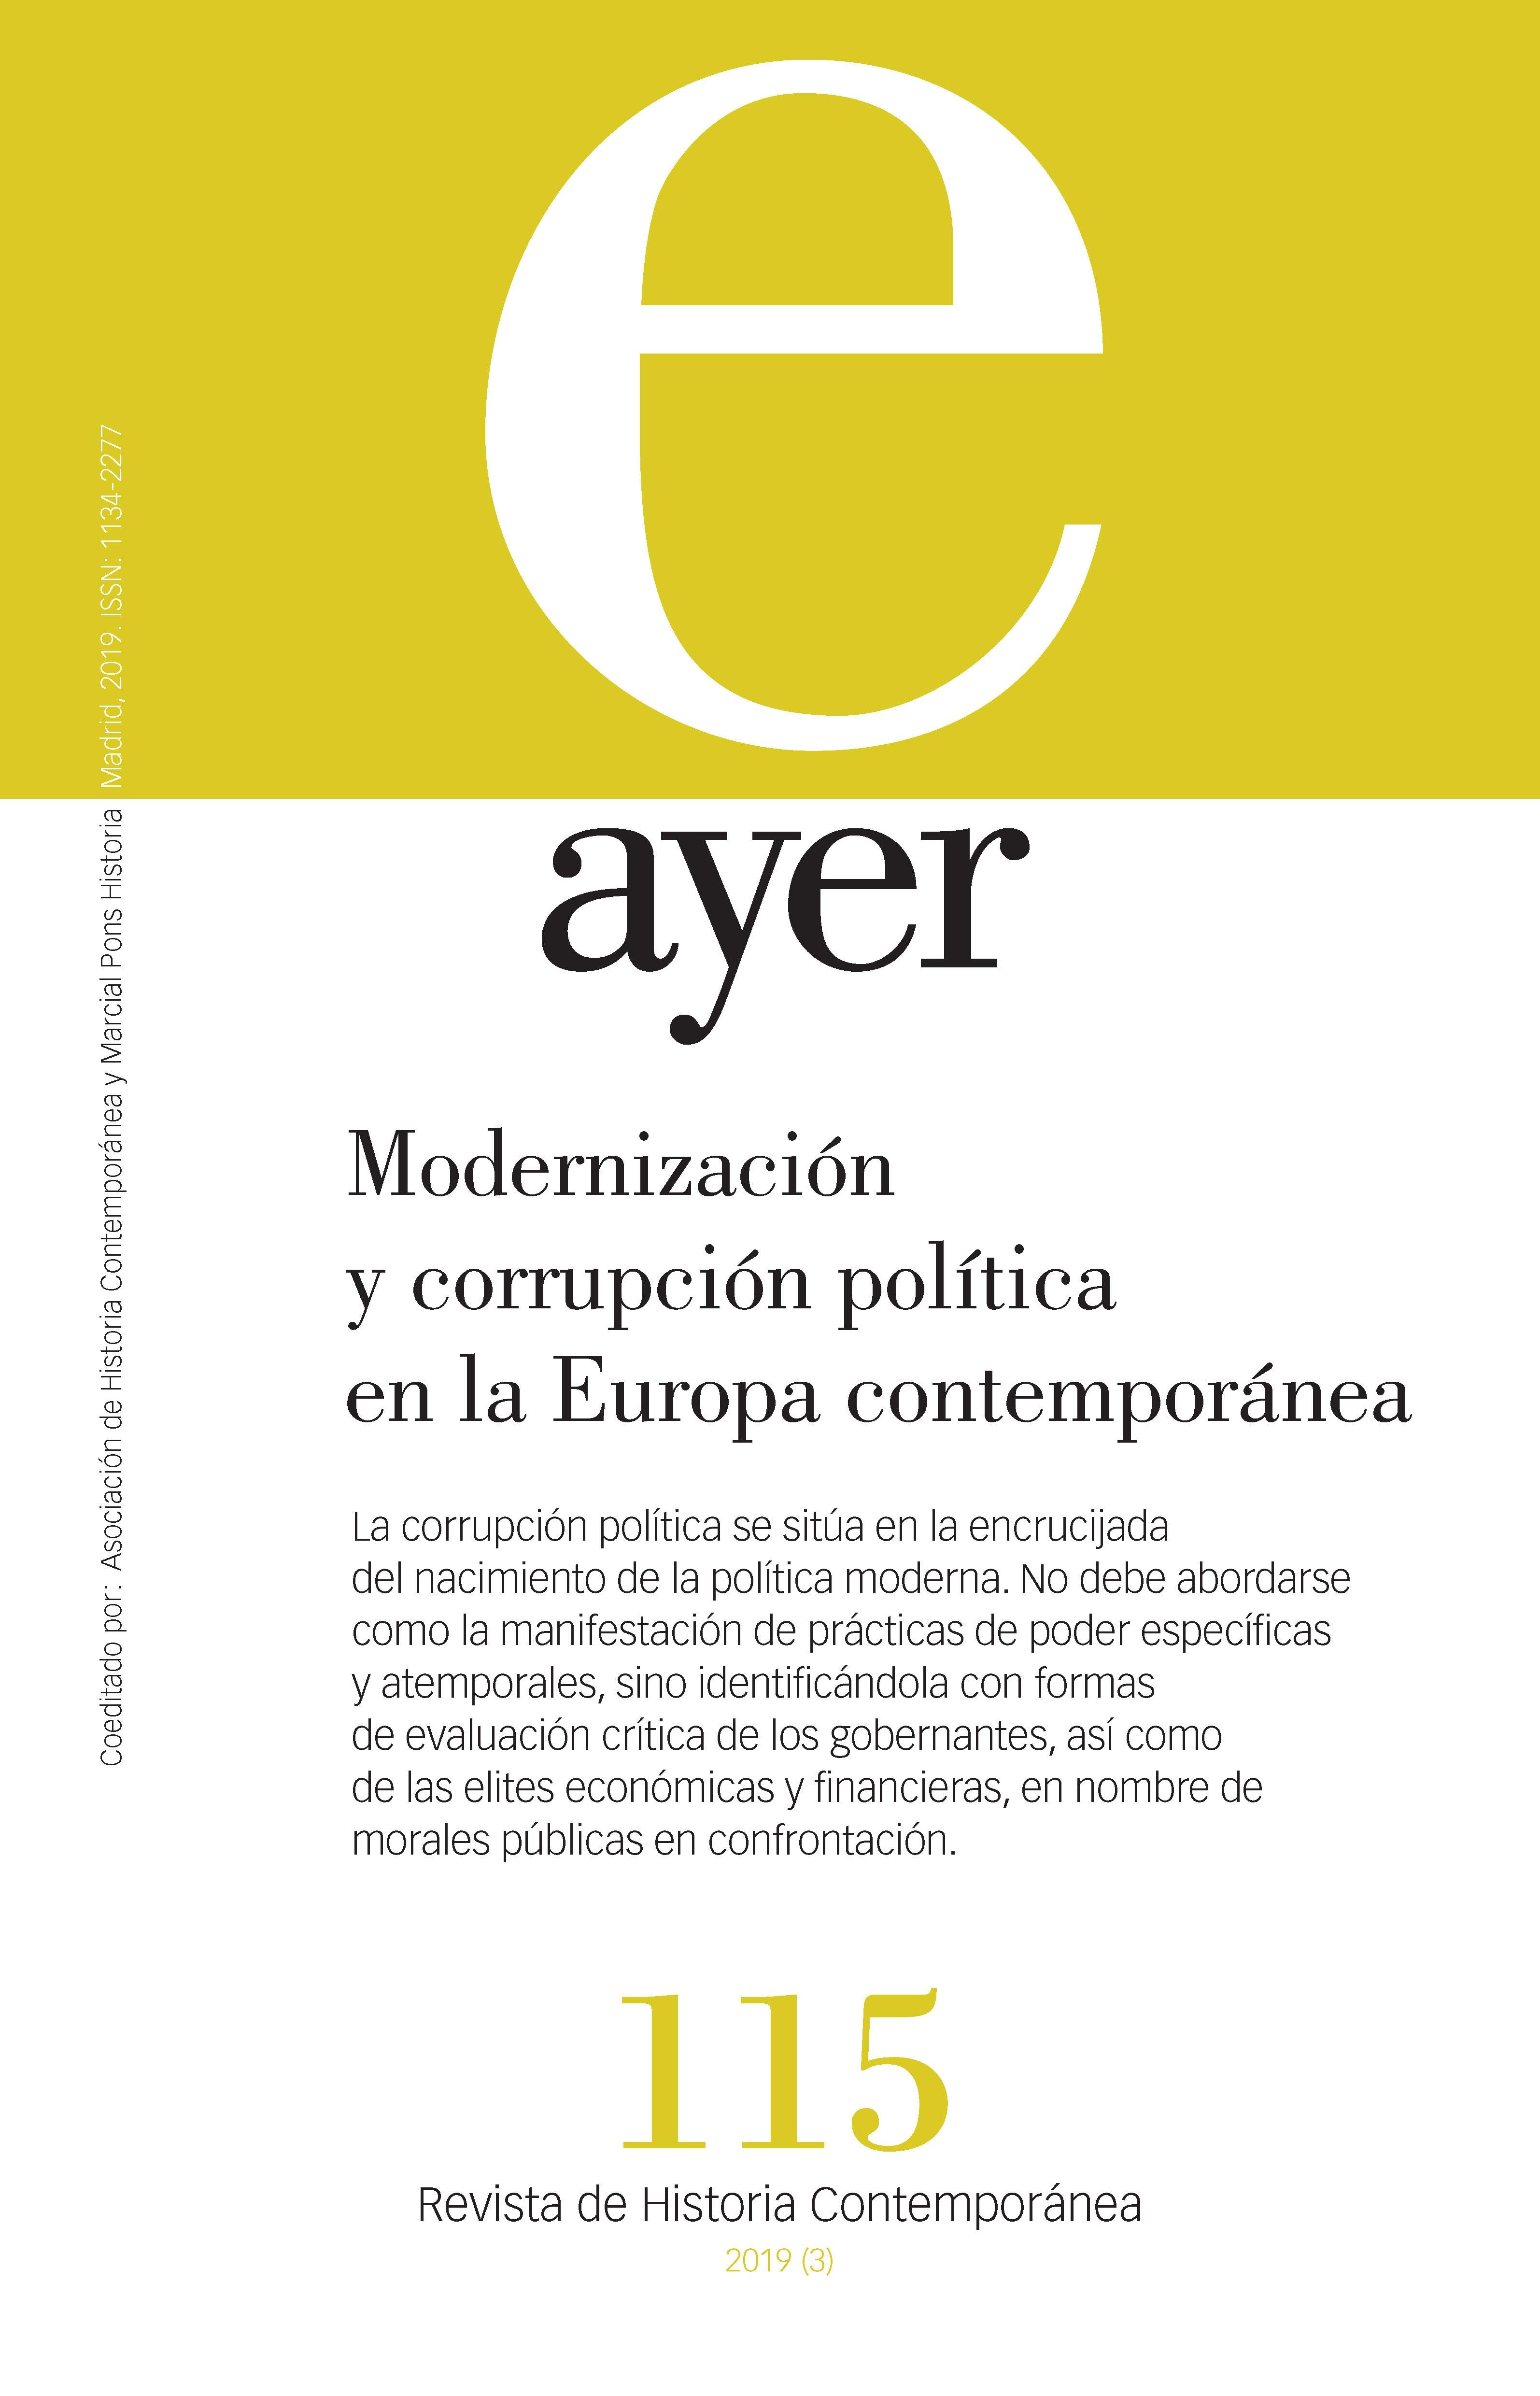 Revista Ayer nº 115: Modernización y corrupción política en la Europa contemporánea